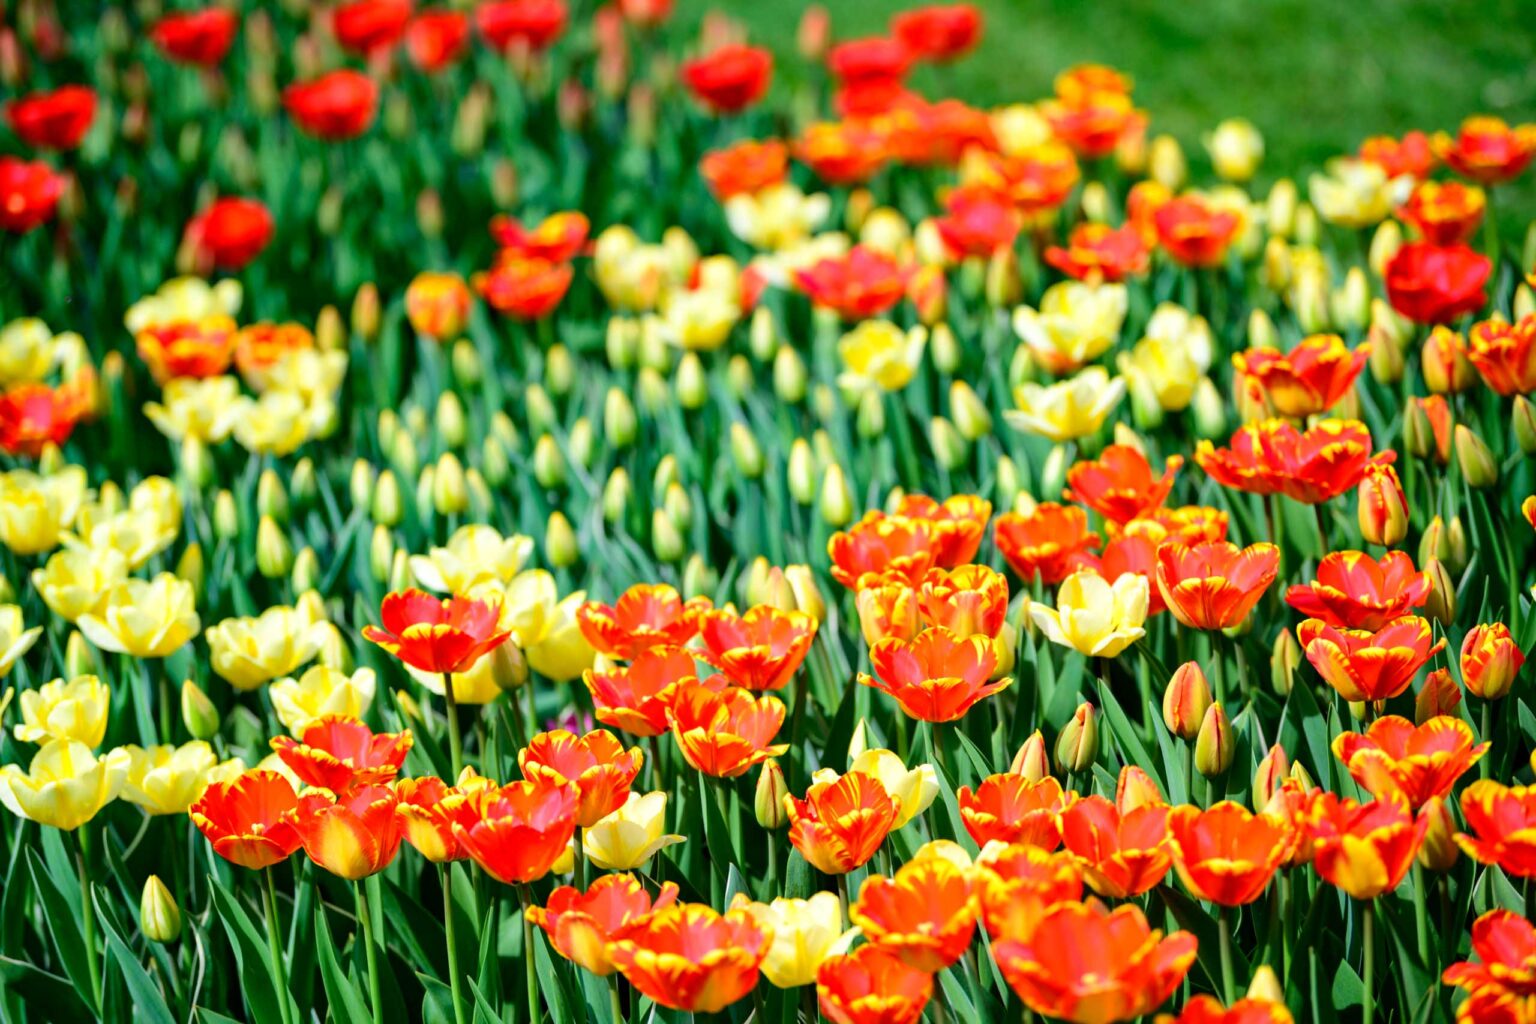 Zakwitly tulipany wiosna w ogrodzie botanicznym 35